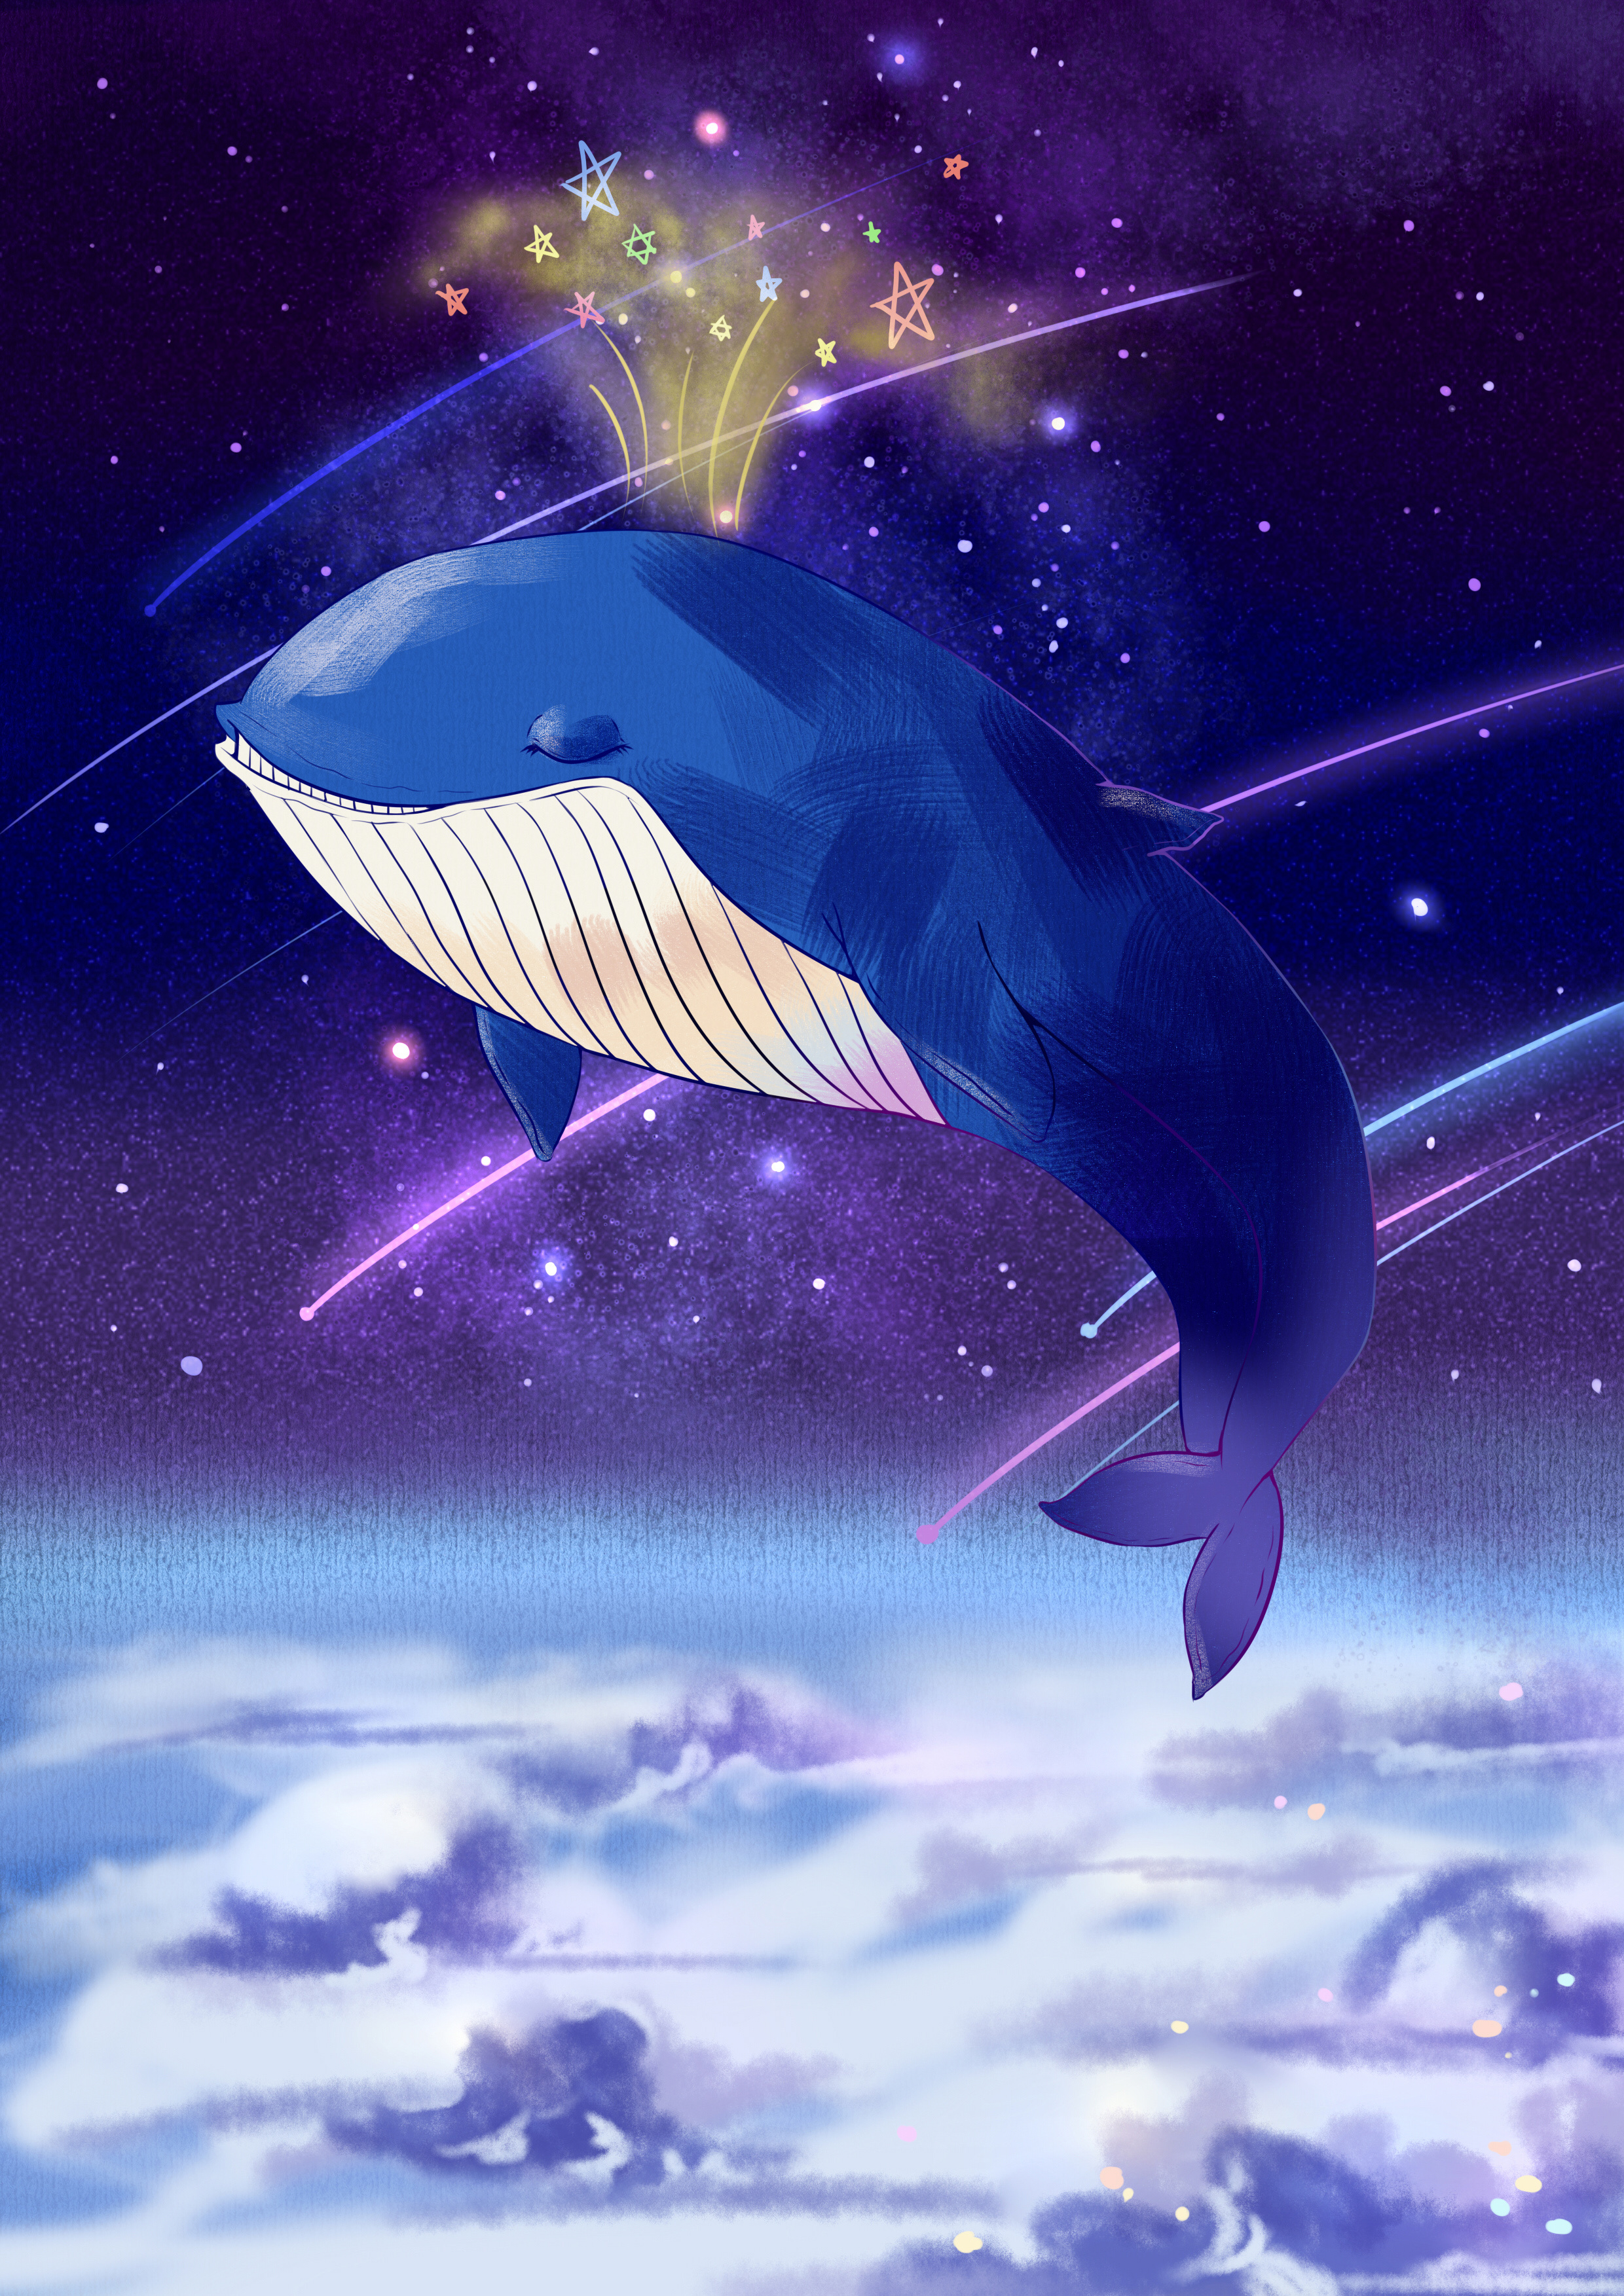 蓝鲸动漫图片 星空图片